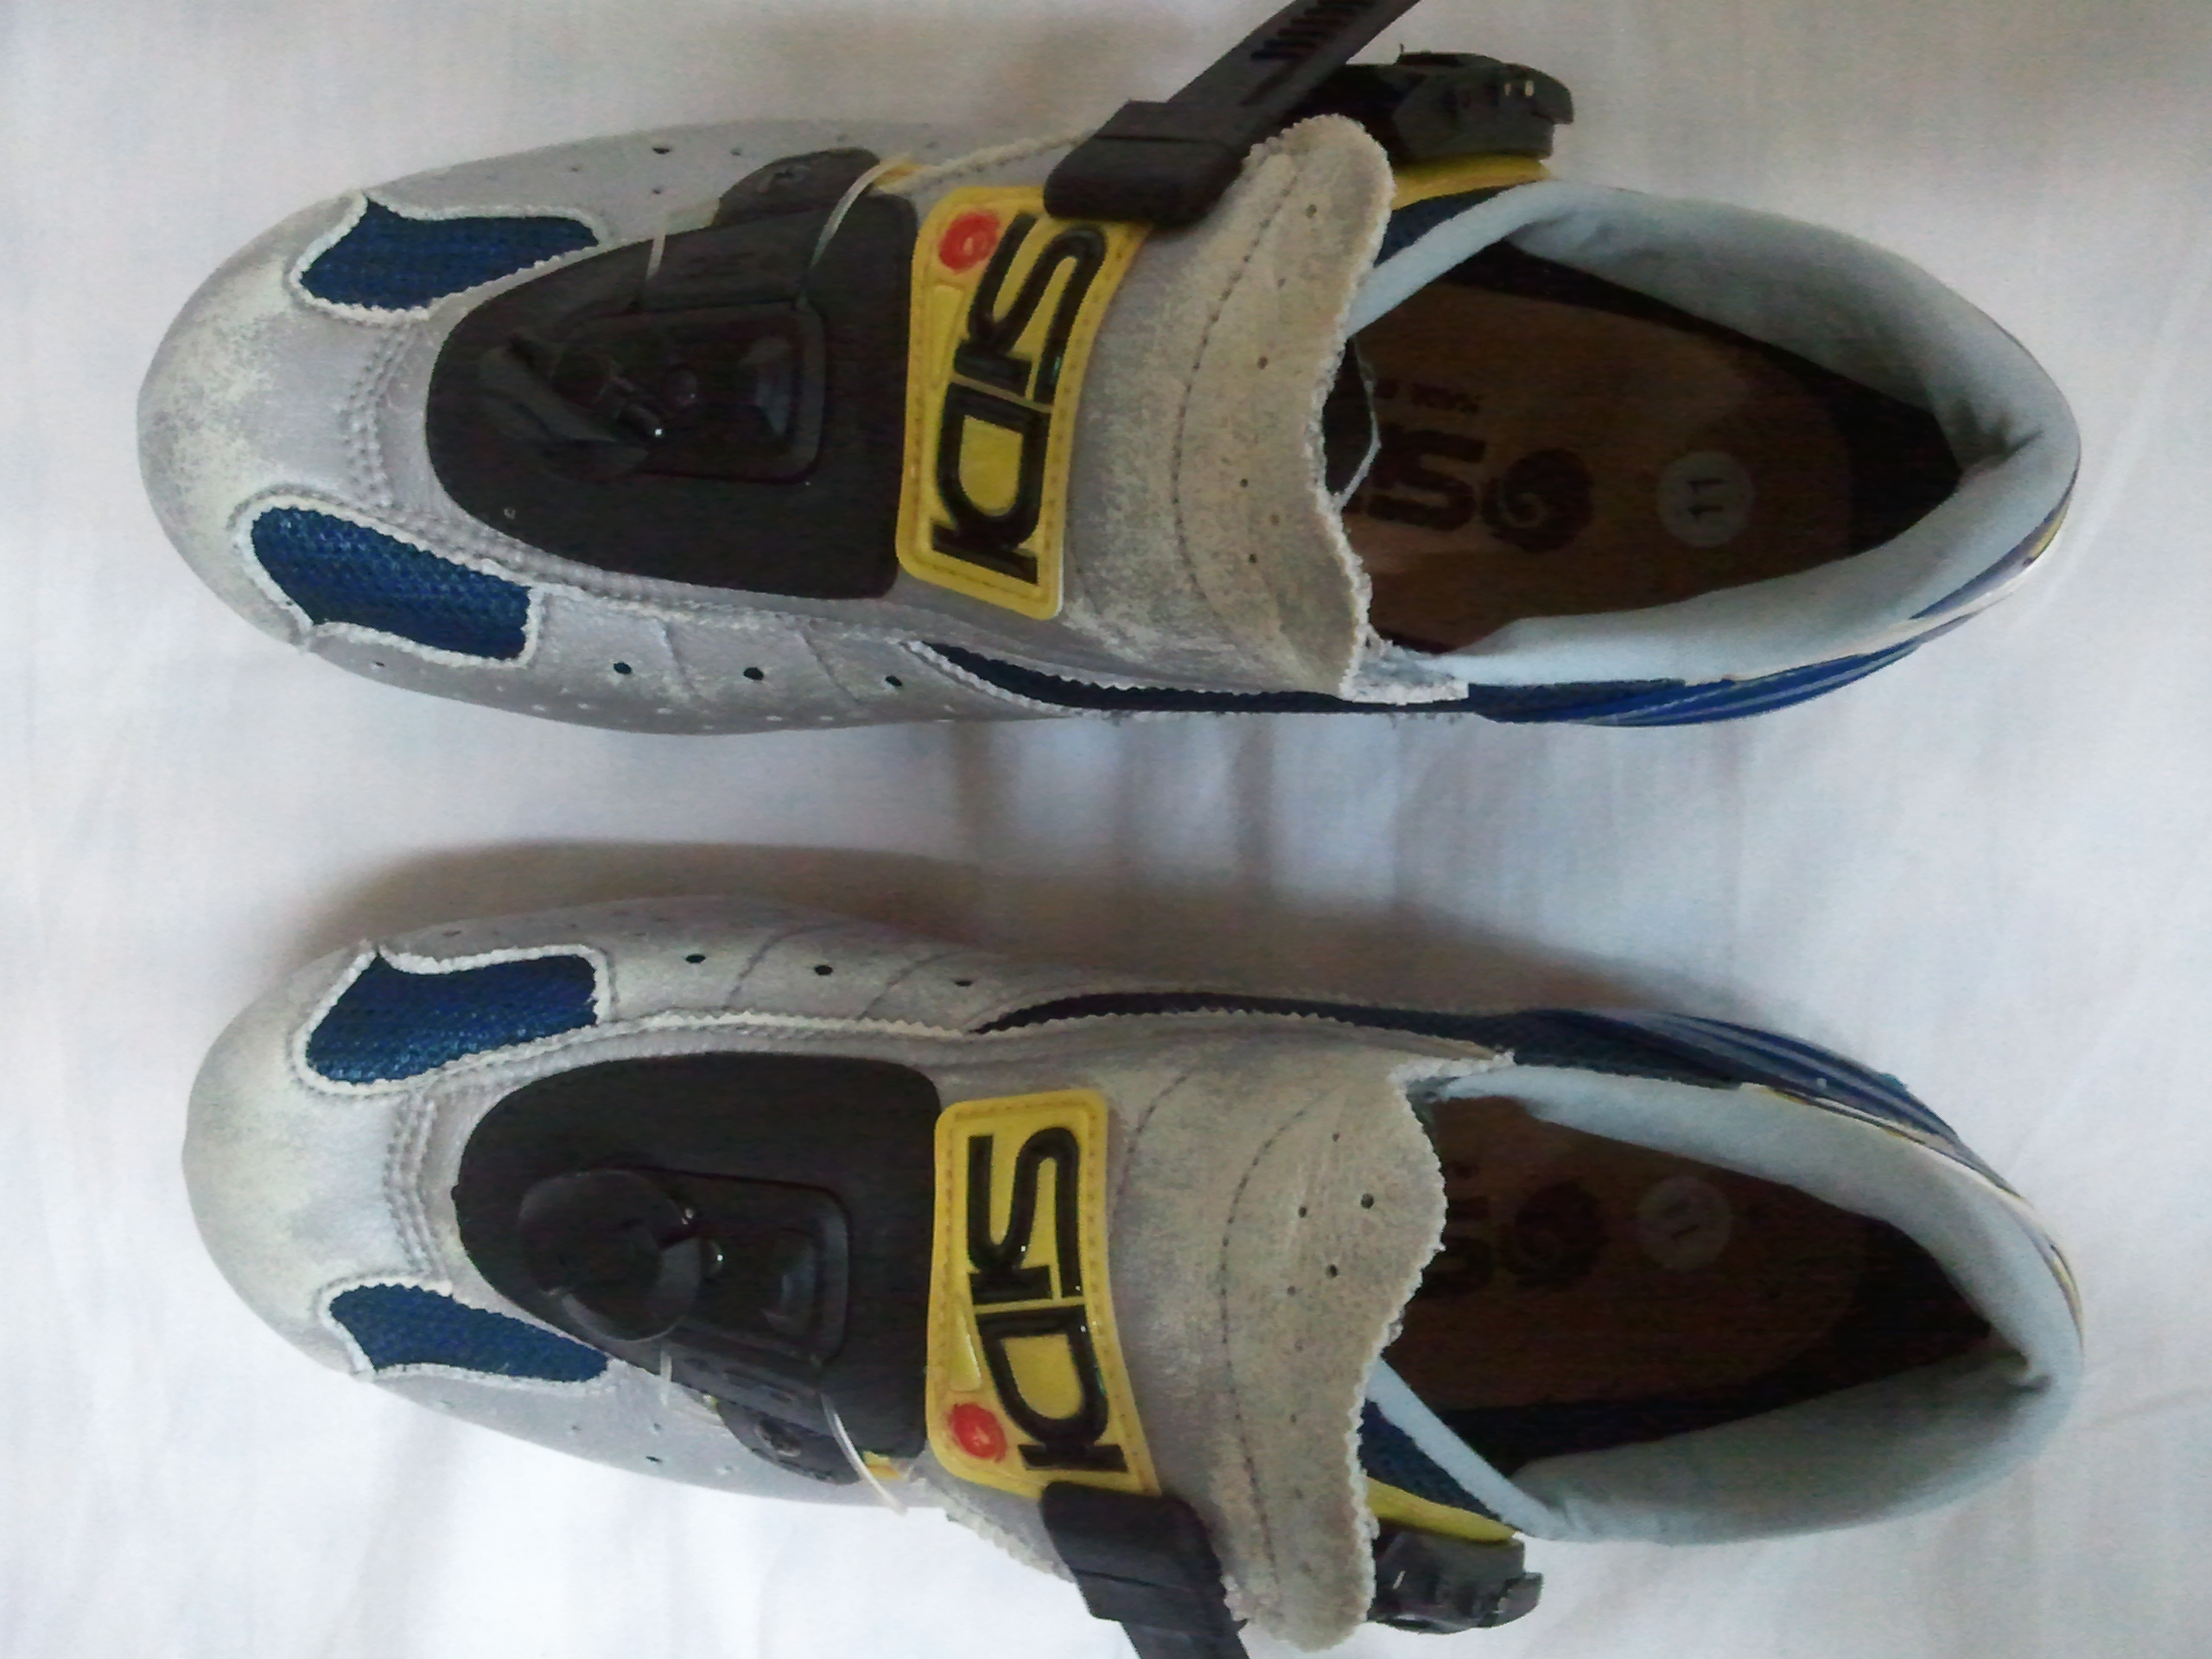 2011-07-06 18.17.35.jpg : 시디 싸이클 신발 팝니다.